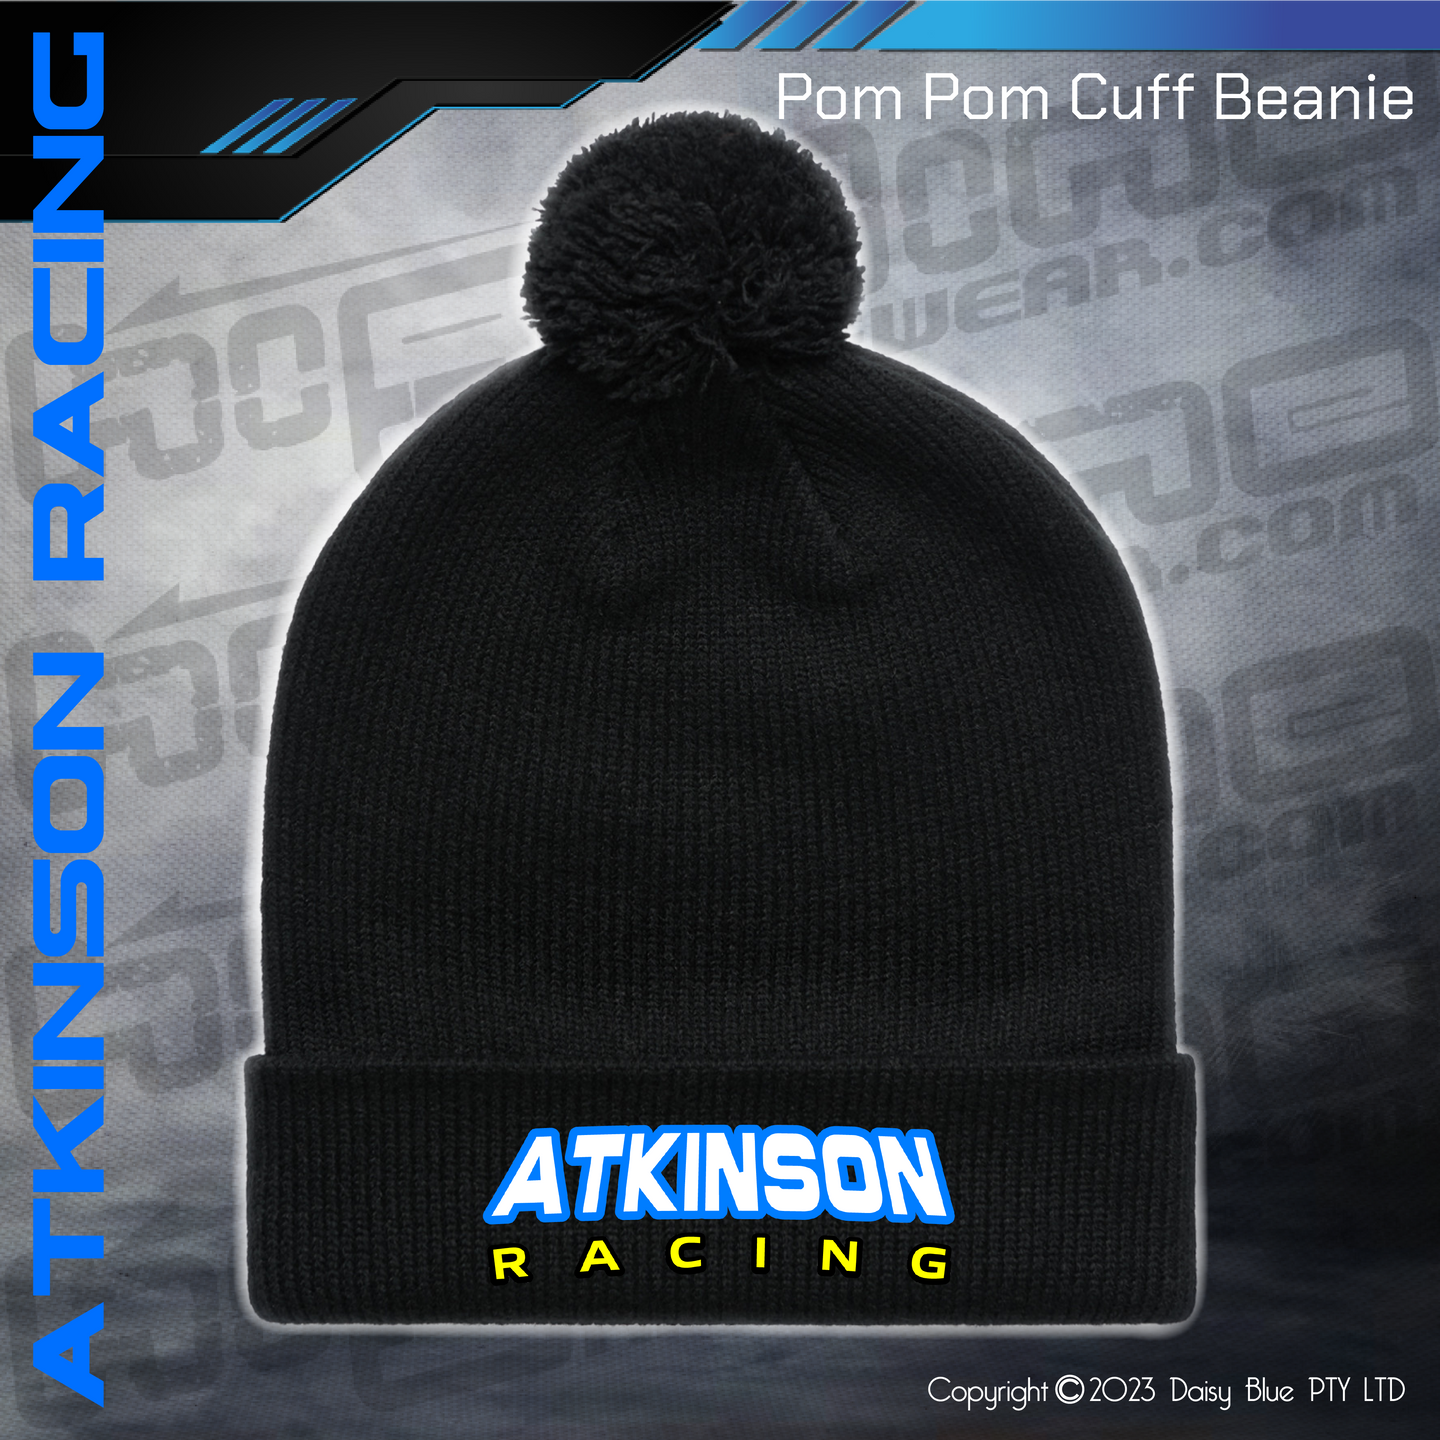 POM POM BEANIE - Atkinson Racing